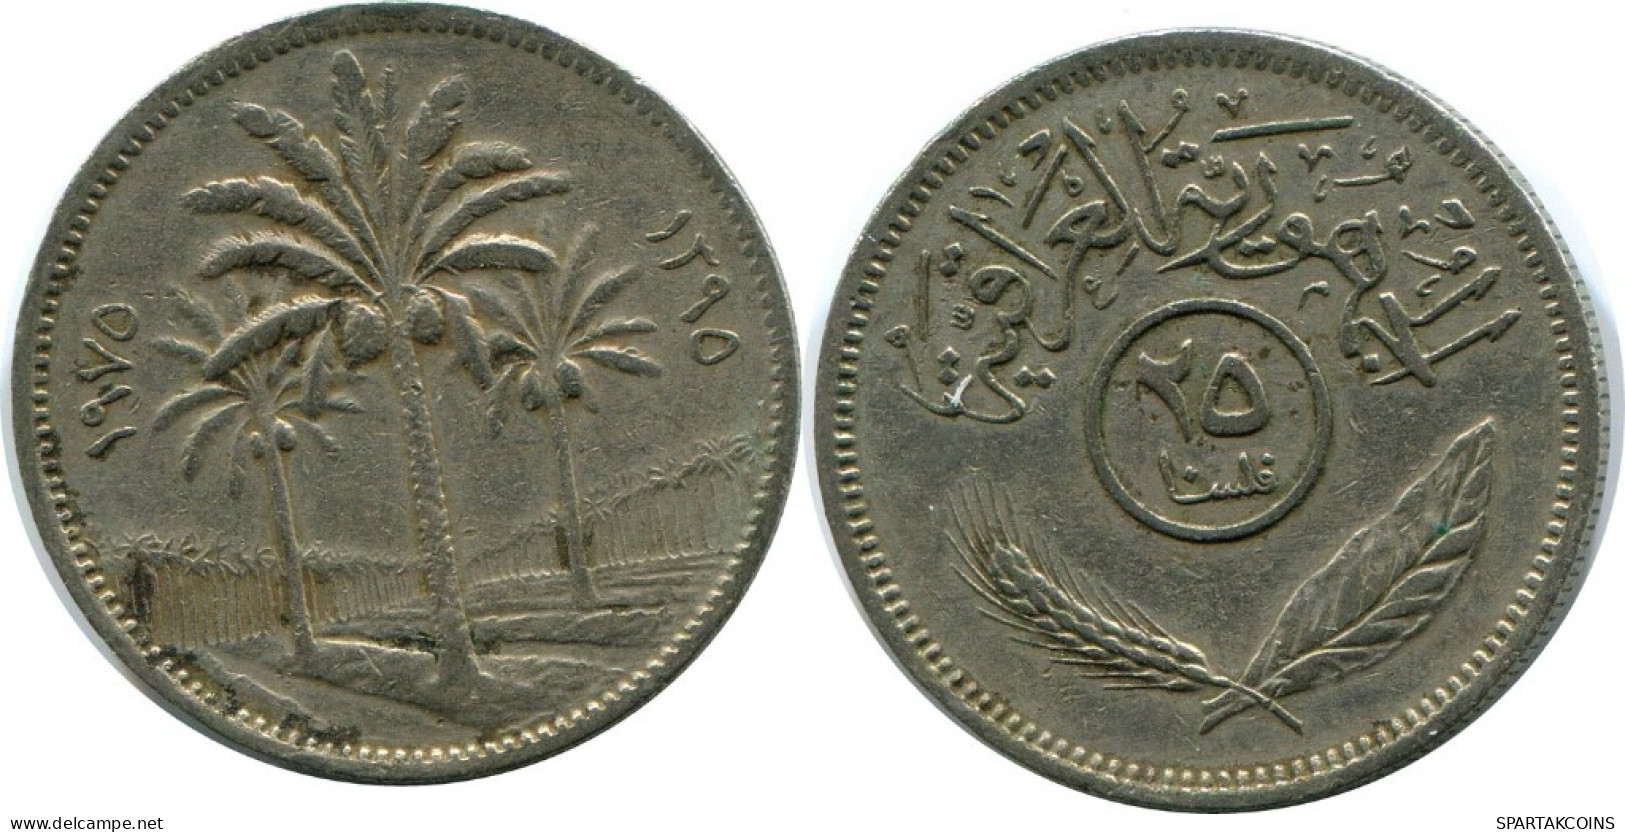 25 FILS 1975 IRAQ Islamic Coin #AK011.U.A - Iraq